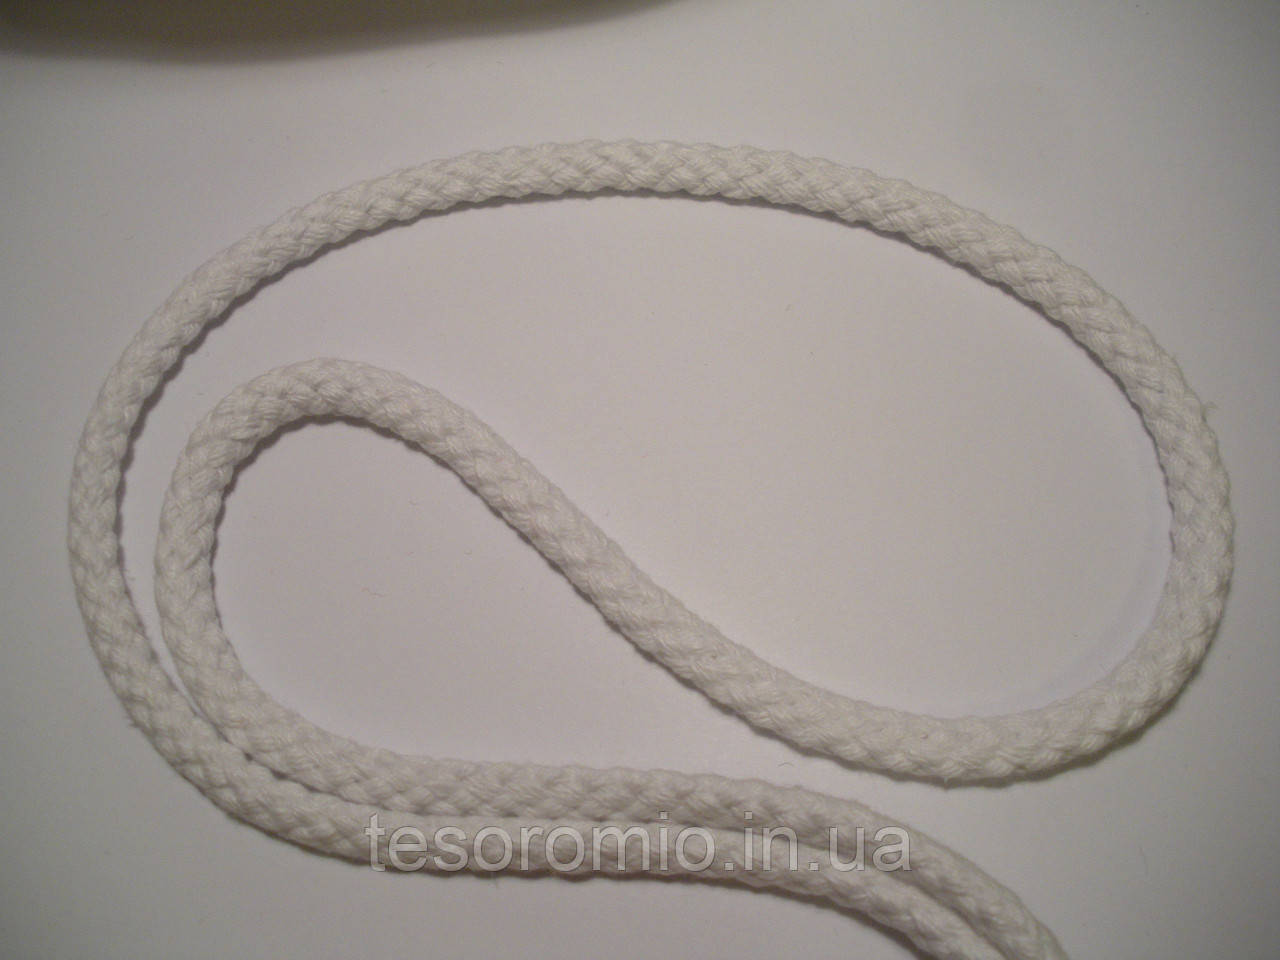 Шнур для одягу бавовняний, товстий, білий діаметр 8мм